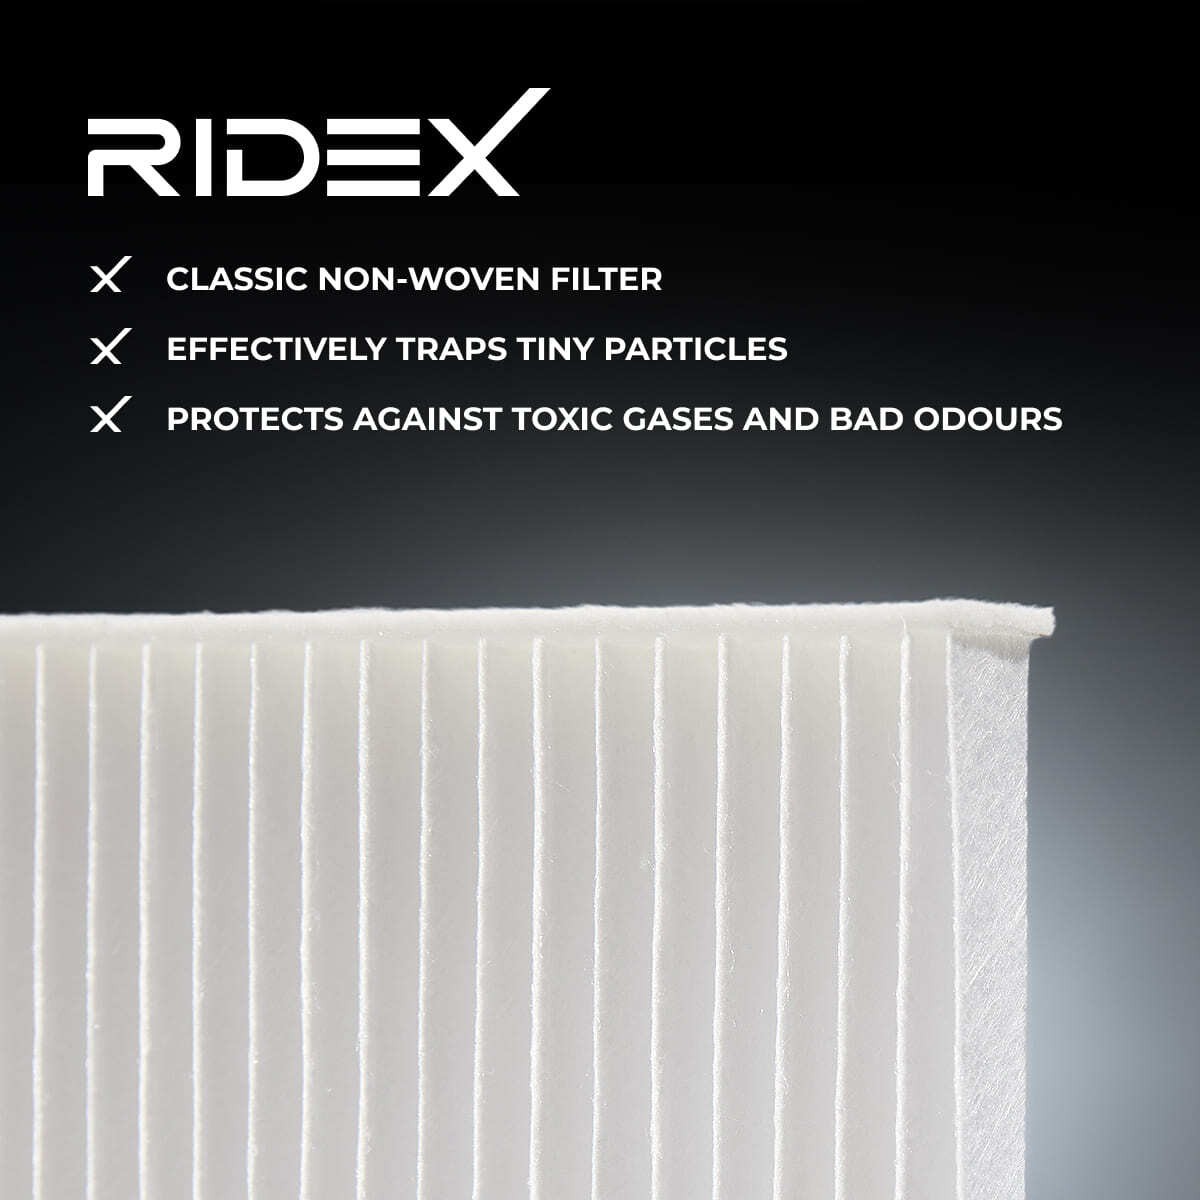 424I0021 Air con filter 424I0021 RIDEX Pollen Filter, Particulate Filter, Filter Insert, 194 mm x 214 mm x 29 mm, rectangular